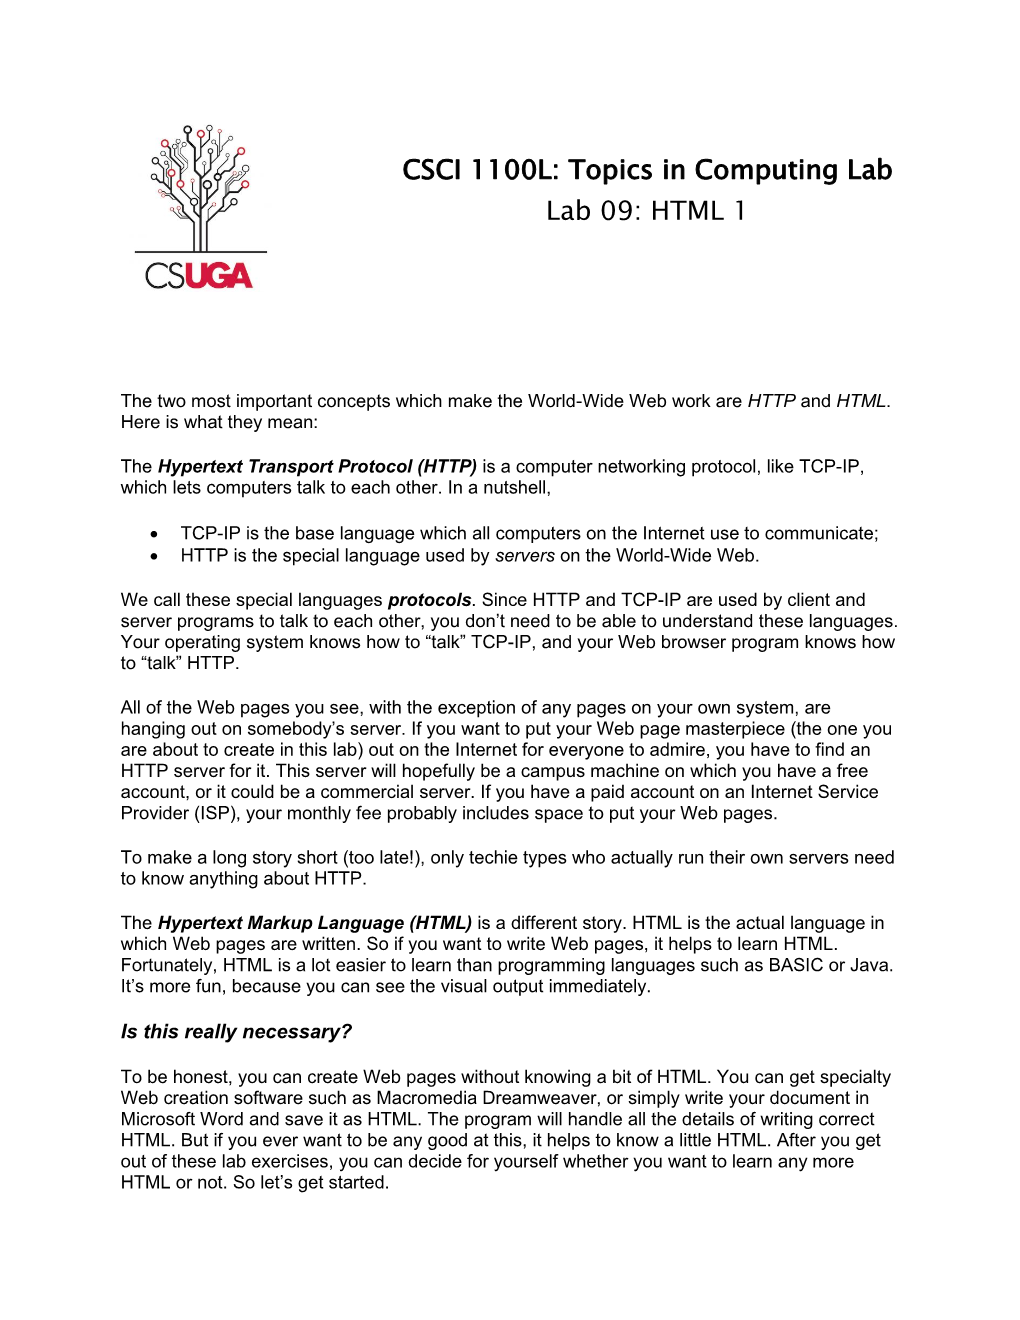 CSCI 1100L: Topics in Computing Lab Lab 09: HTML 1